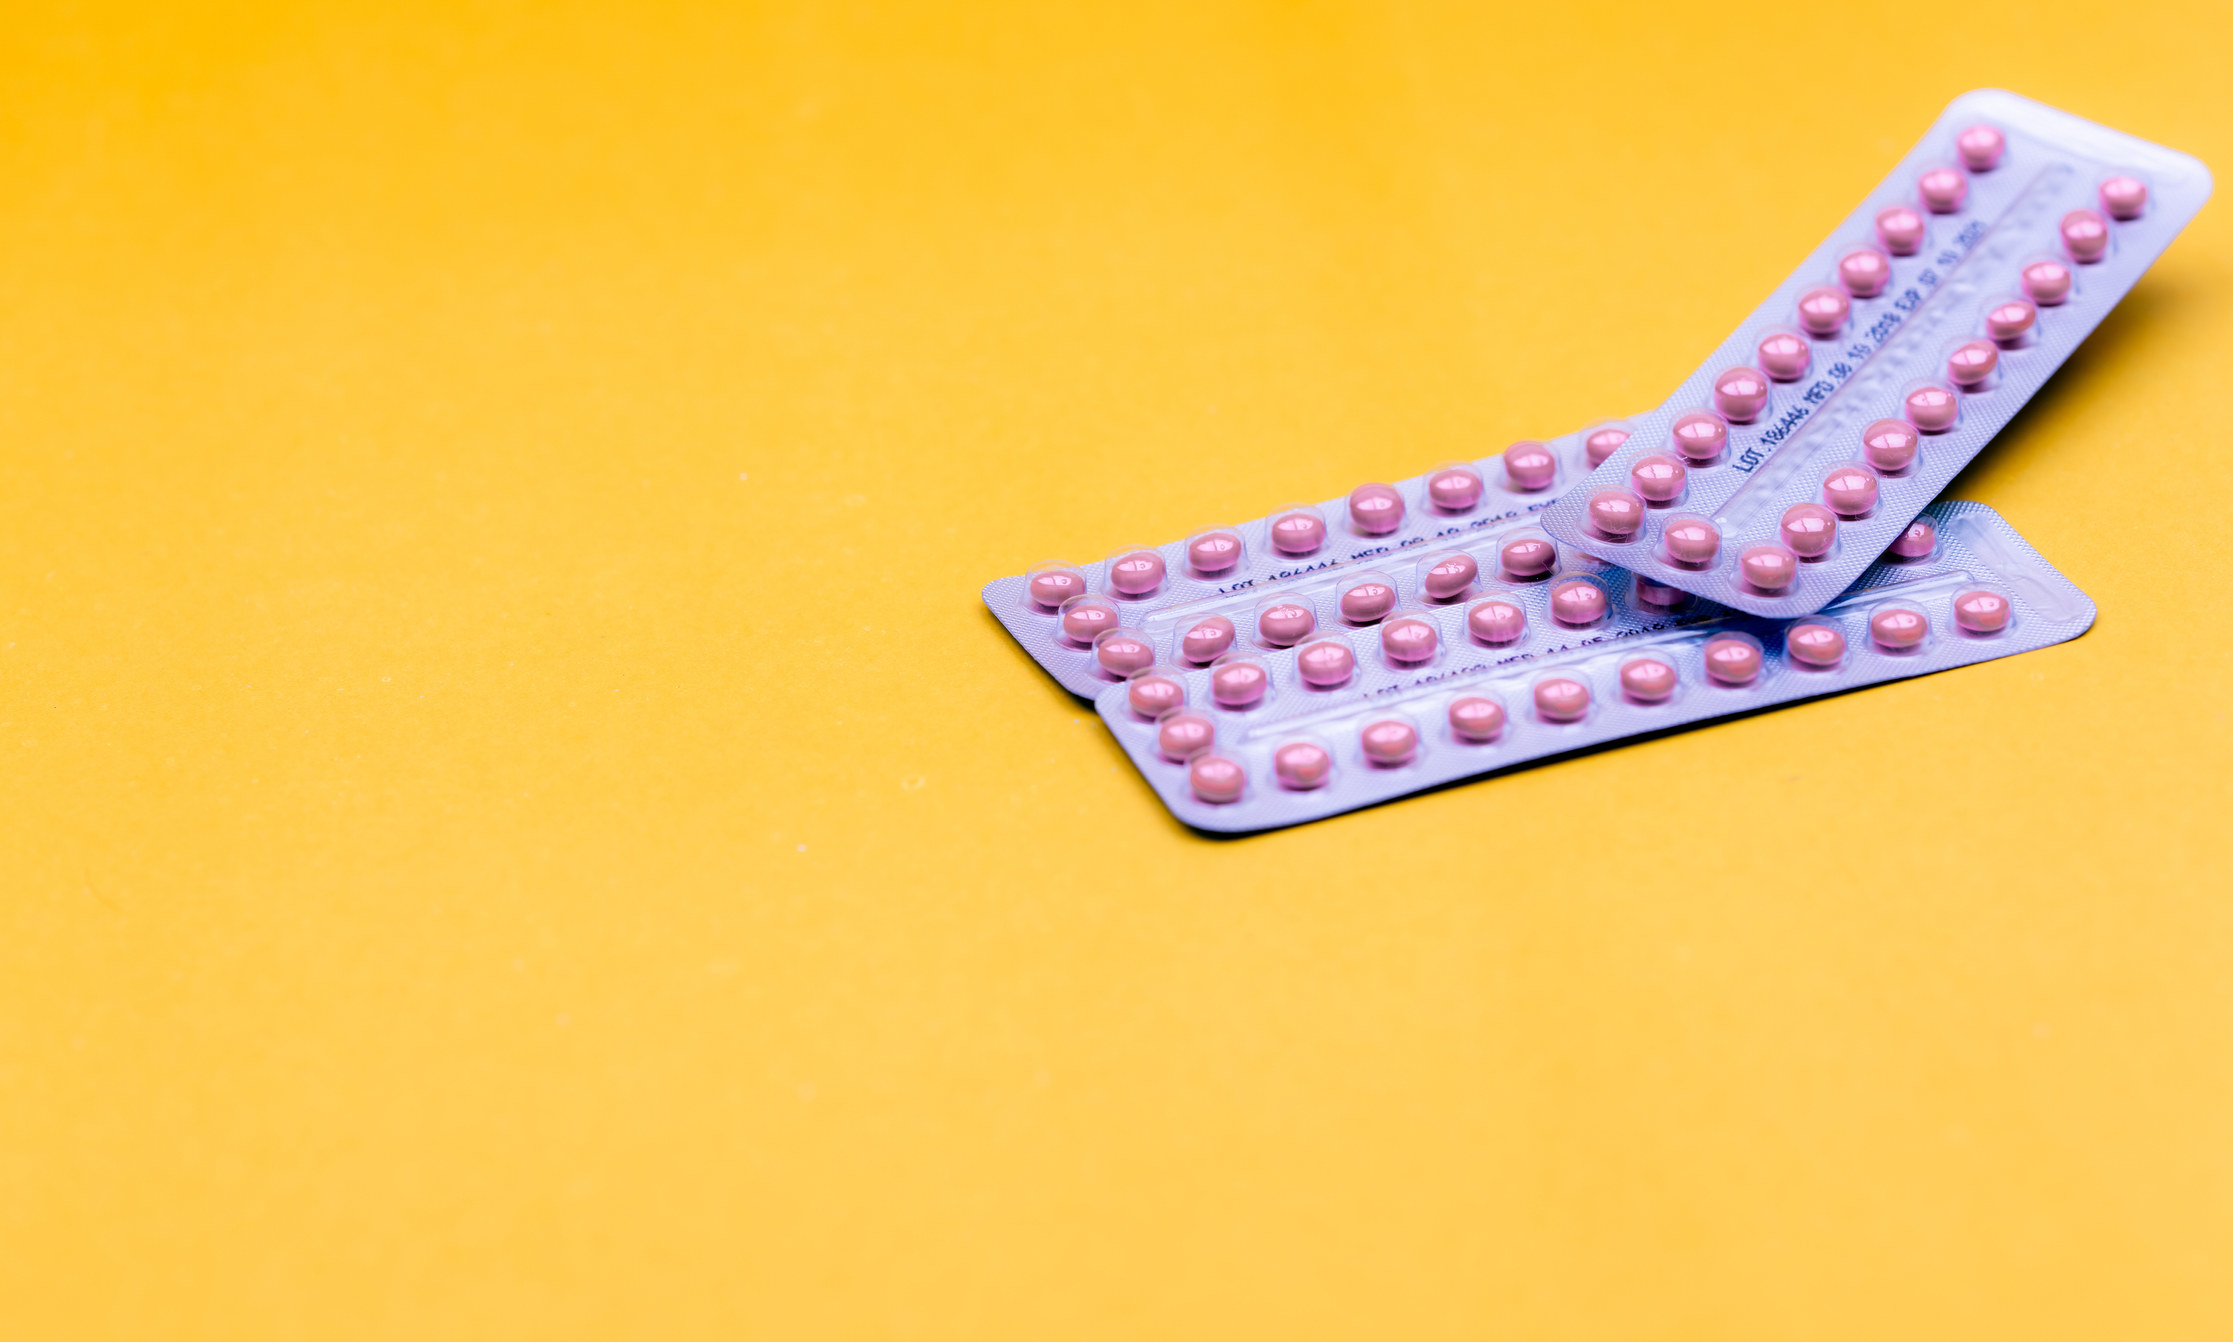 Regla escasa y marrón con pastillas anticonceptivas